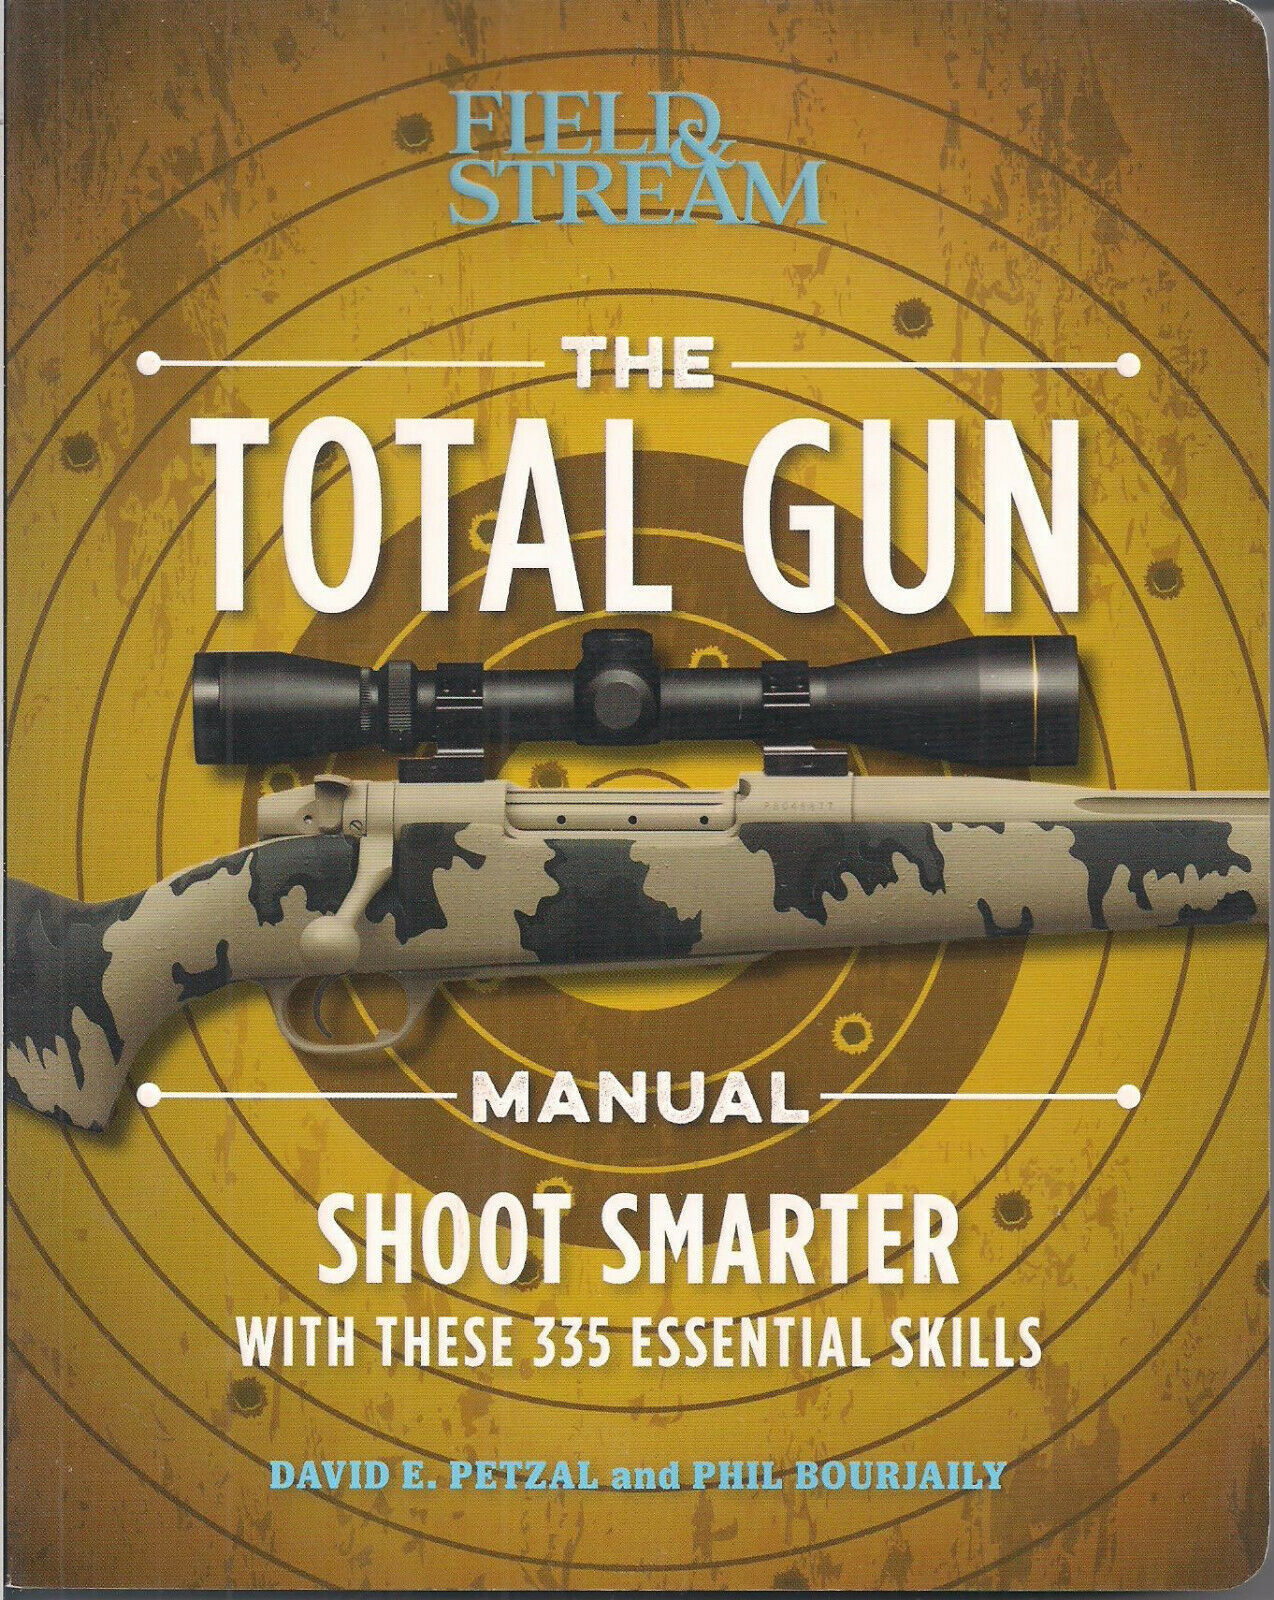 The Total Gun Manual by David Petzal and Phil Bourjaily - $7.50